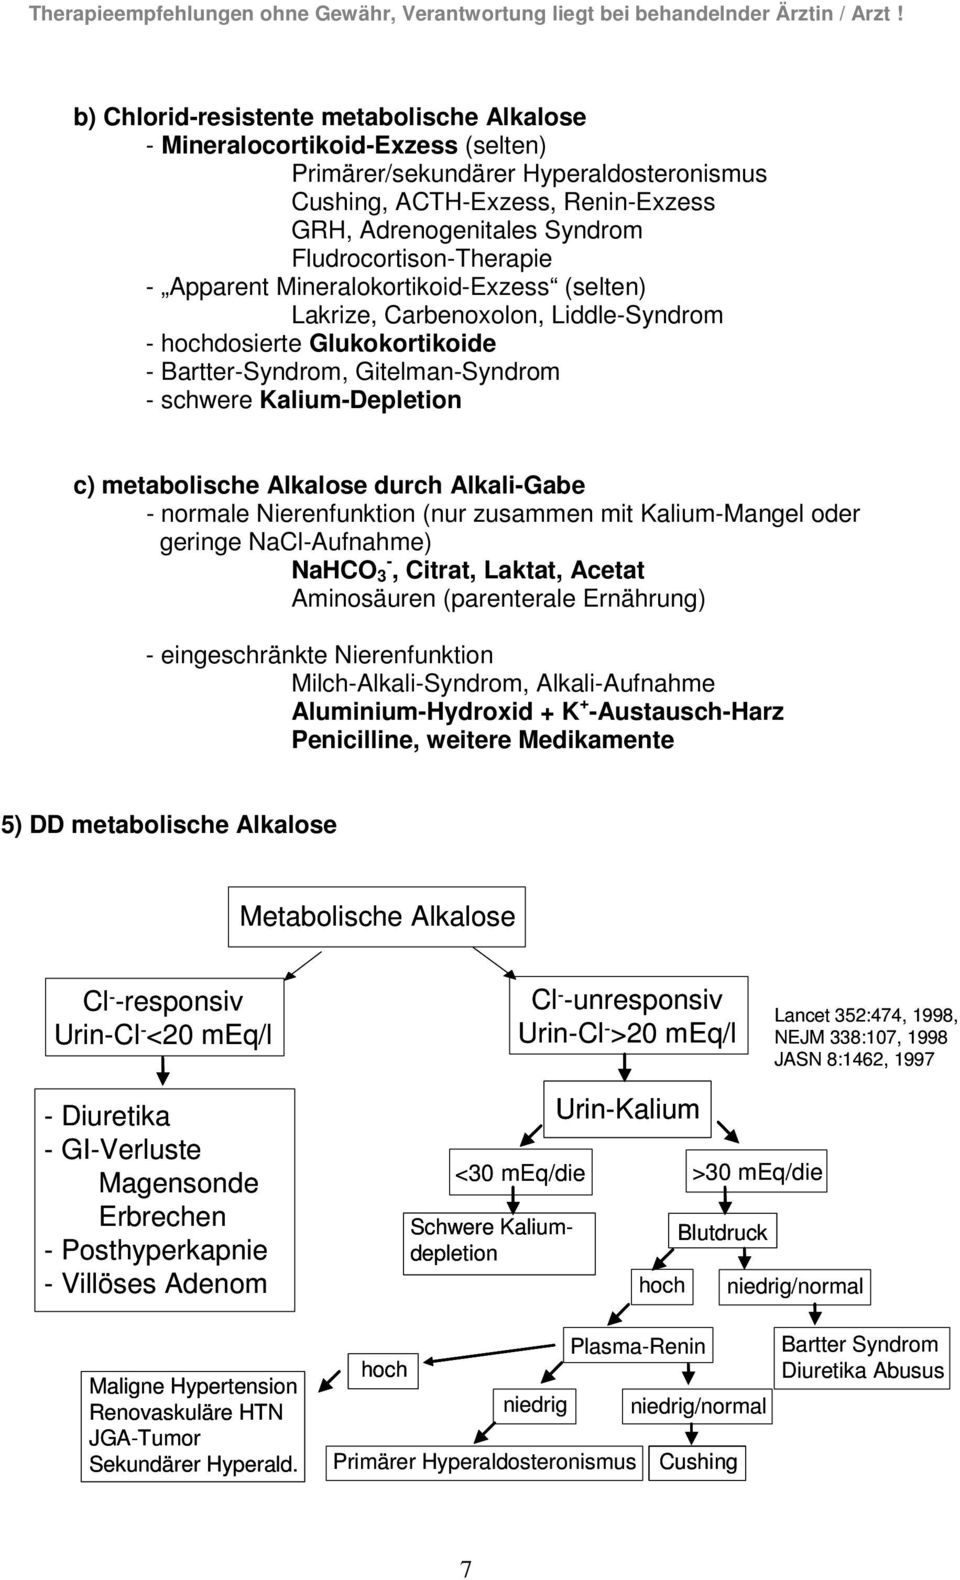 metabolische Alkalose durch AlkaliGabe normale Nierenfunktion (nur zusammen mit KaliumMangel oder geringe NaClAufnahme) NaHCO, Citrat, Laktat, Acetat Aminosäuren (parenterale Ernährung)